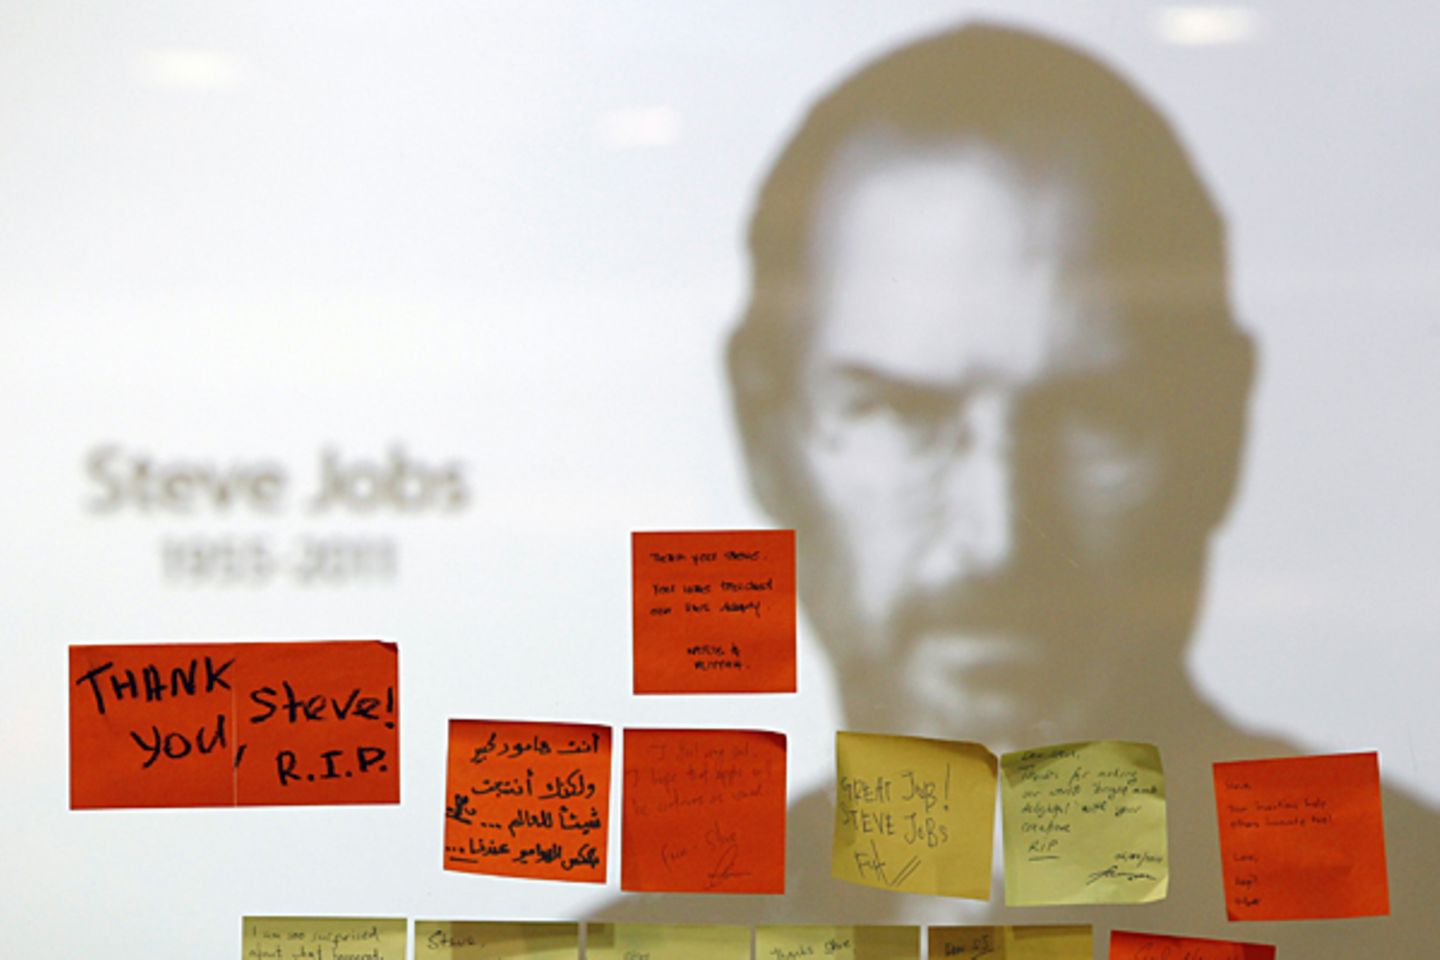 5. Oktober 2011: Apple-Chef Steve Jobs stirbt nach langem Krebsleiden mit 55 Jahren.